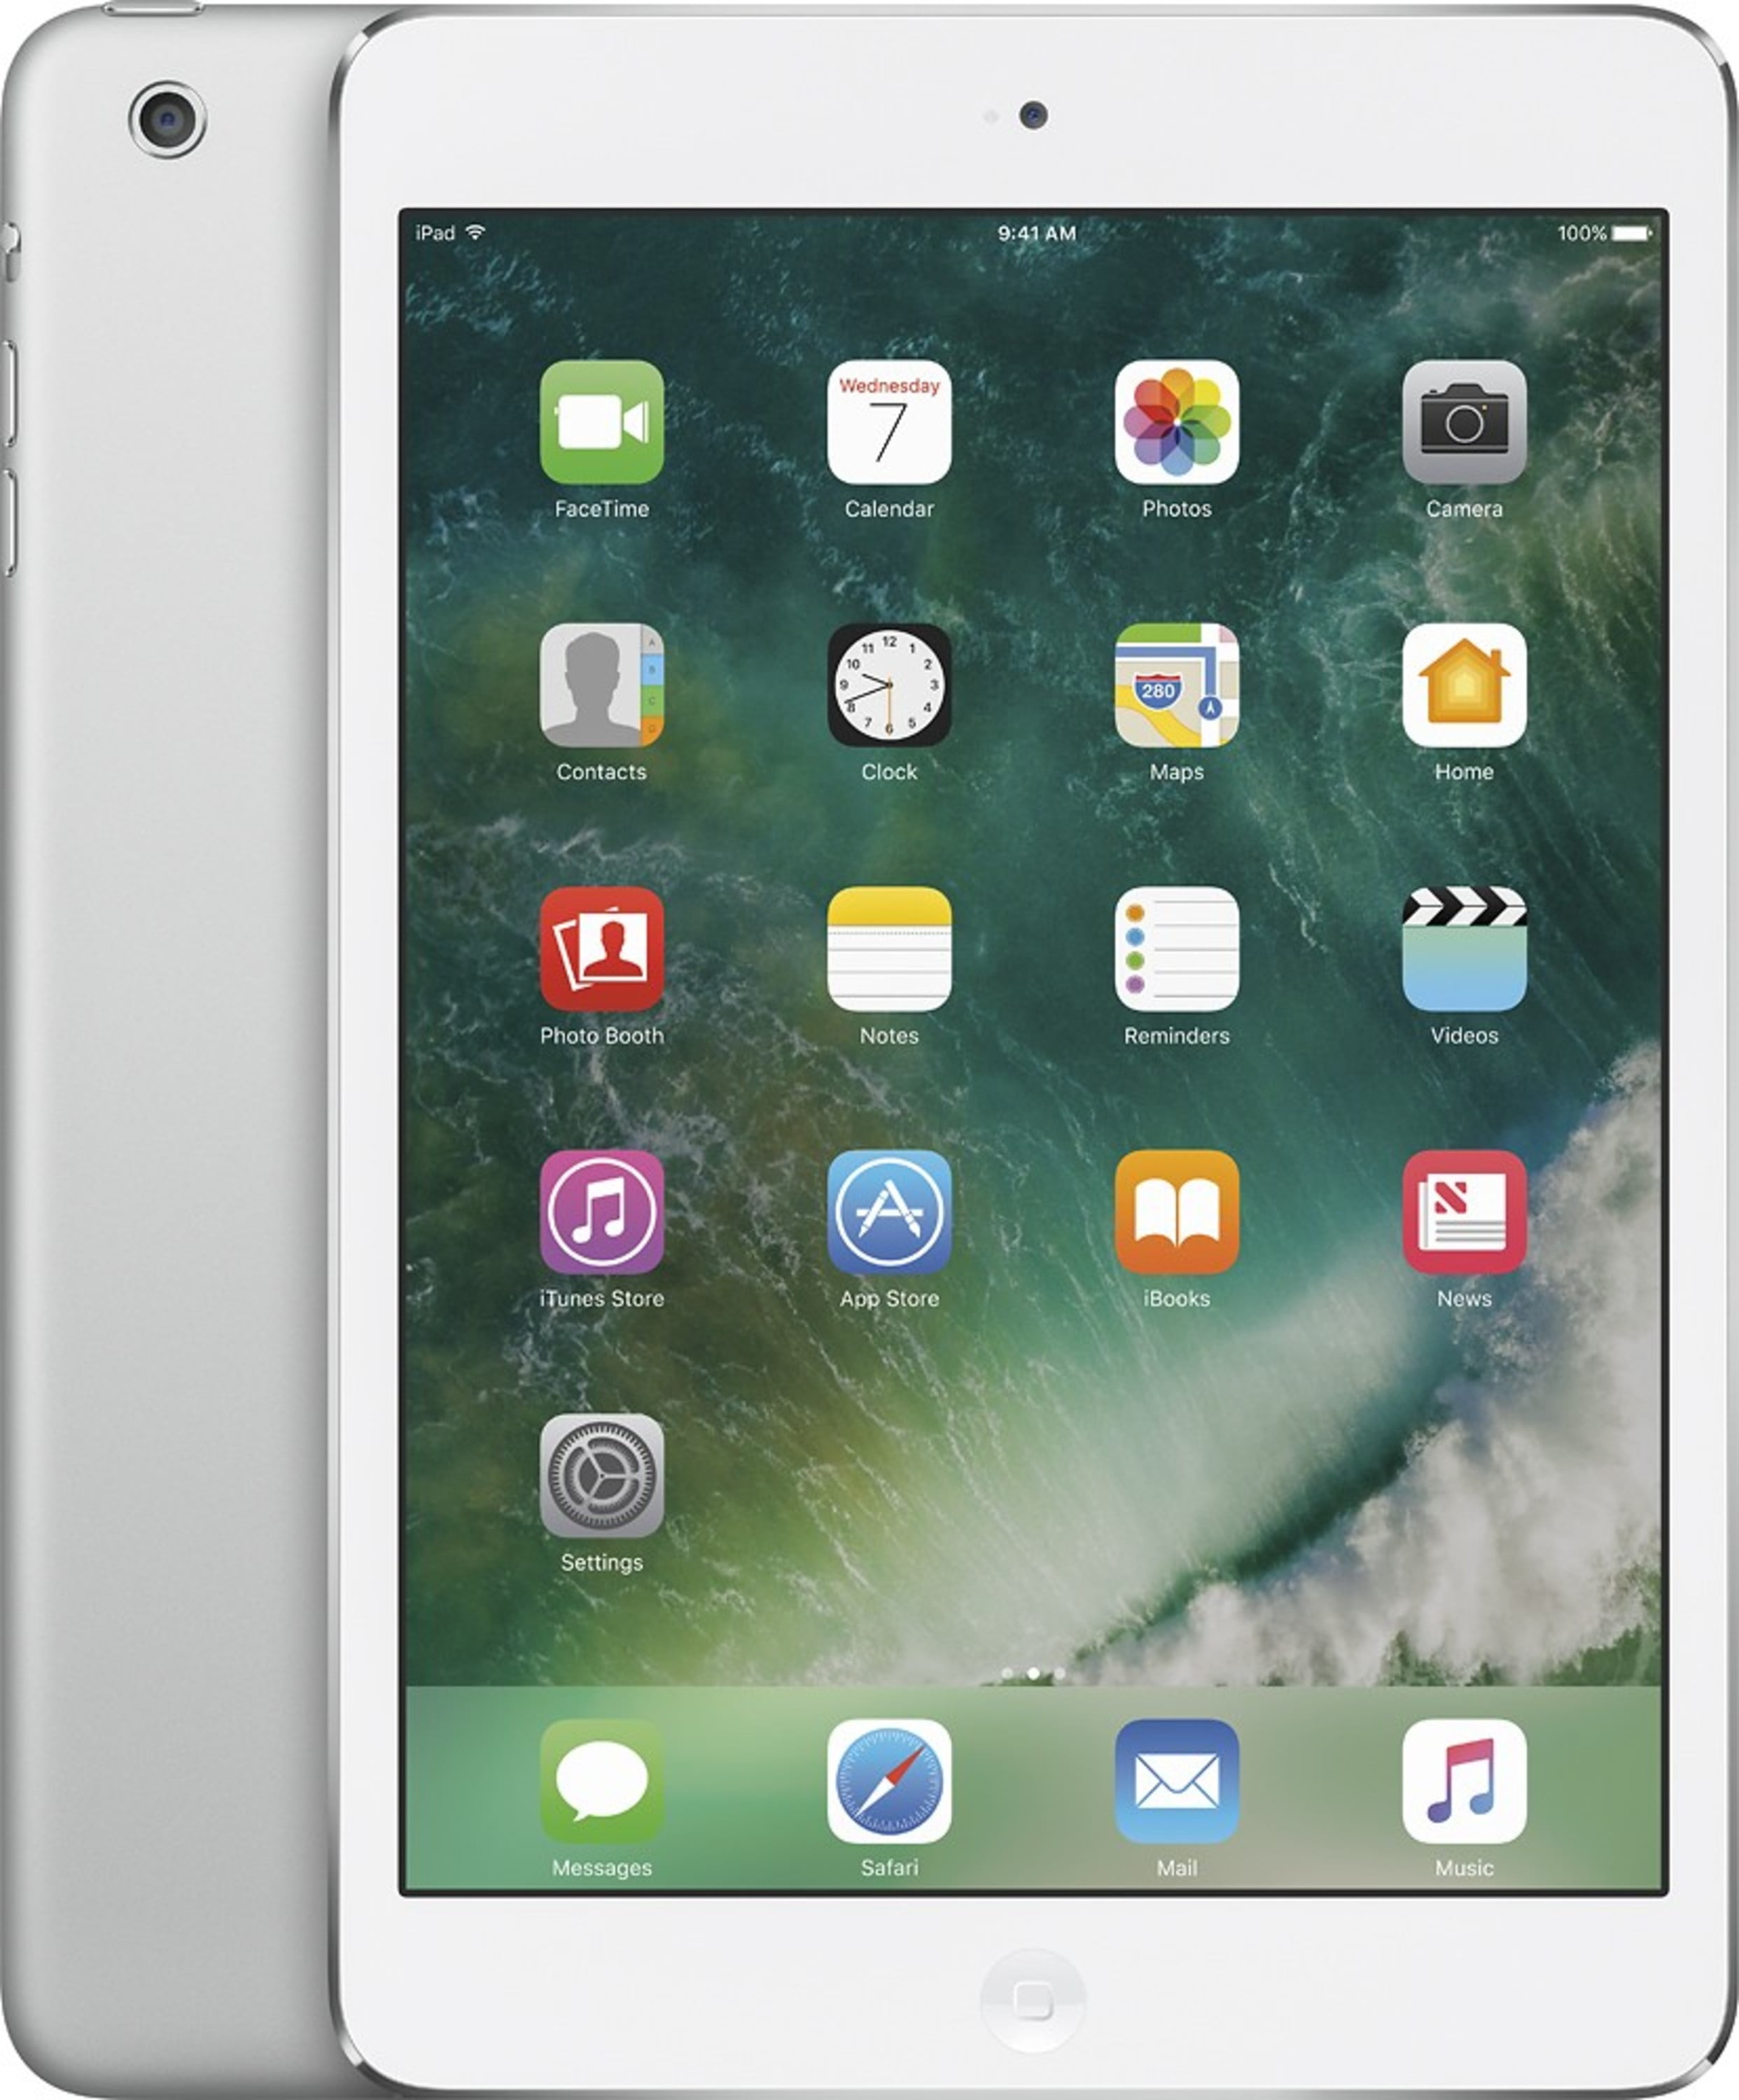 Apple iPad Mini 2 Retina Display MF075LL/A 16GB Unlocked LTE 